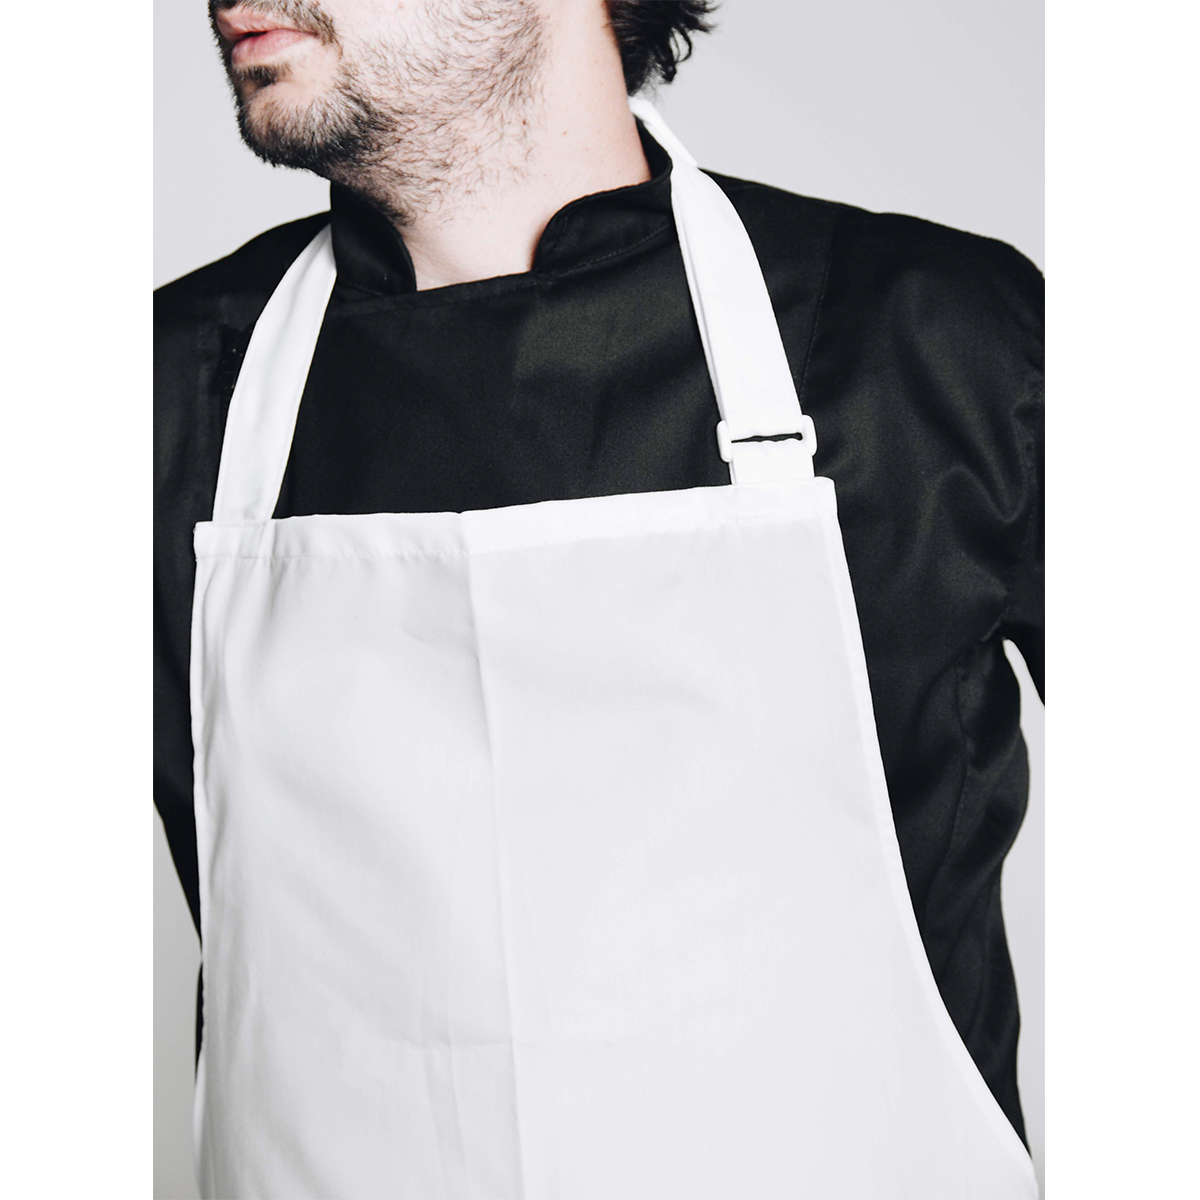 Delantal Pechera Gris by All in Chef, uniformes, Hoteles y Restaurantes, Categorias